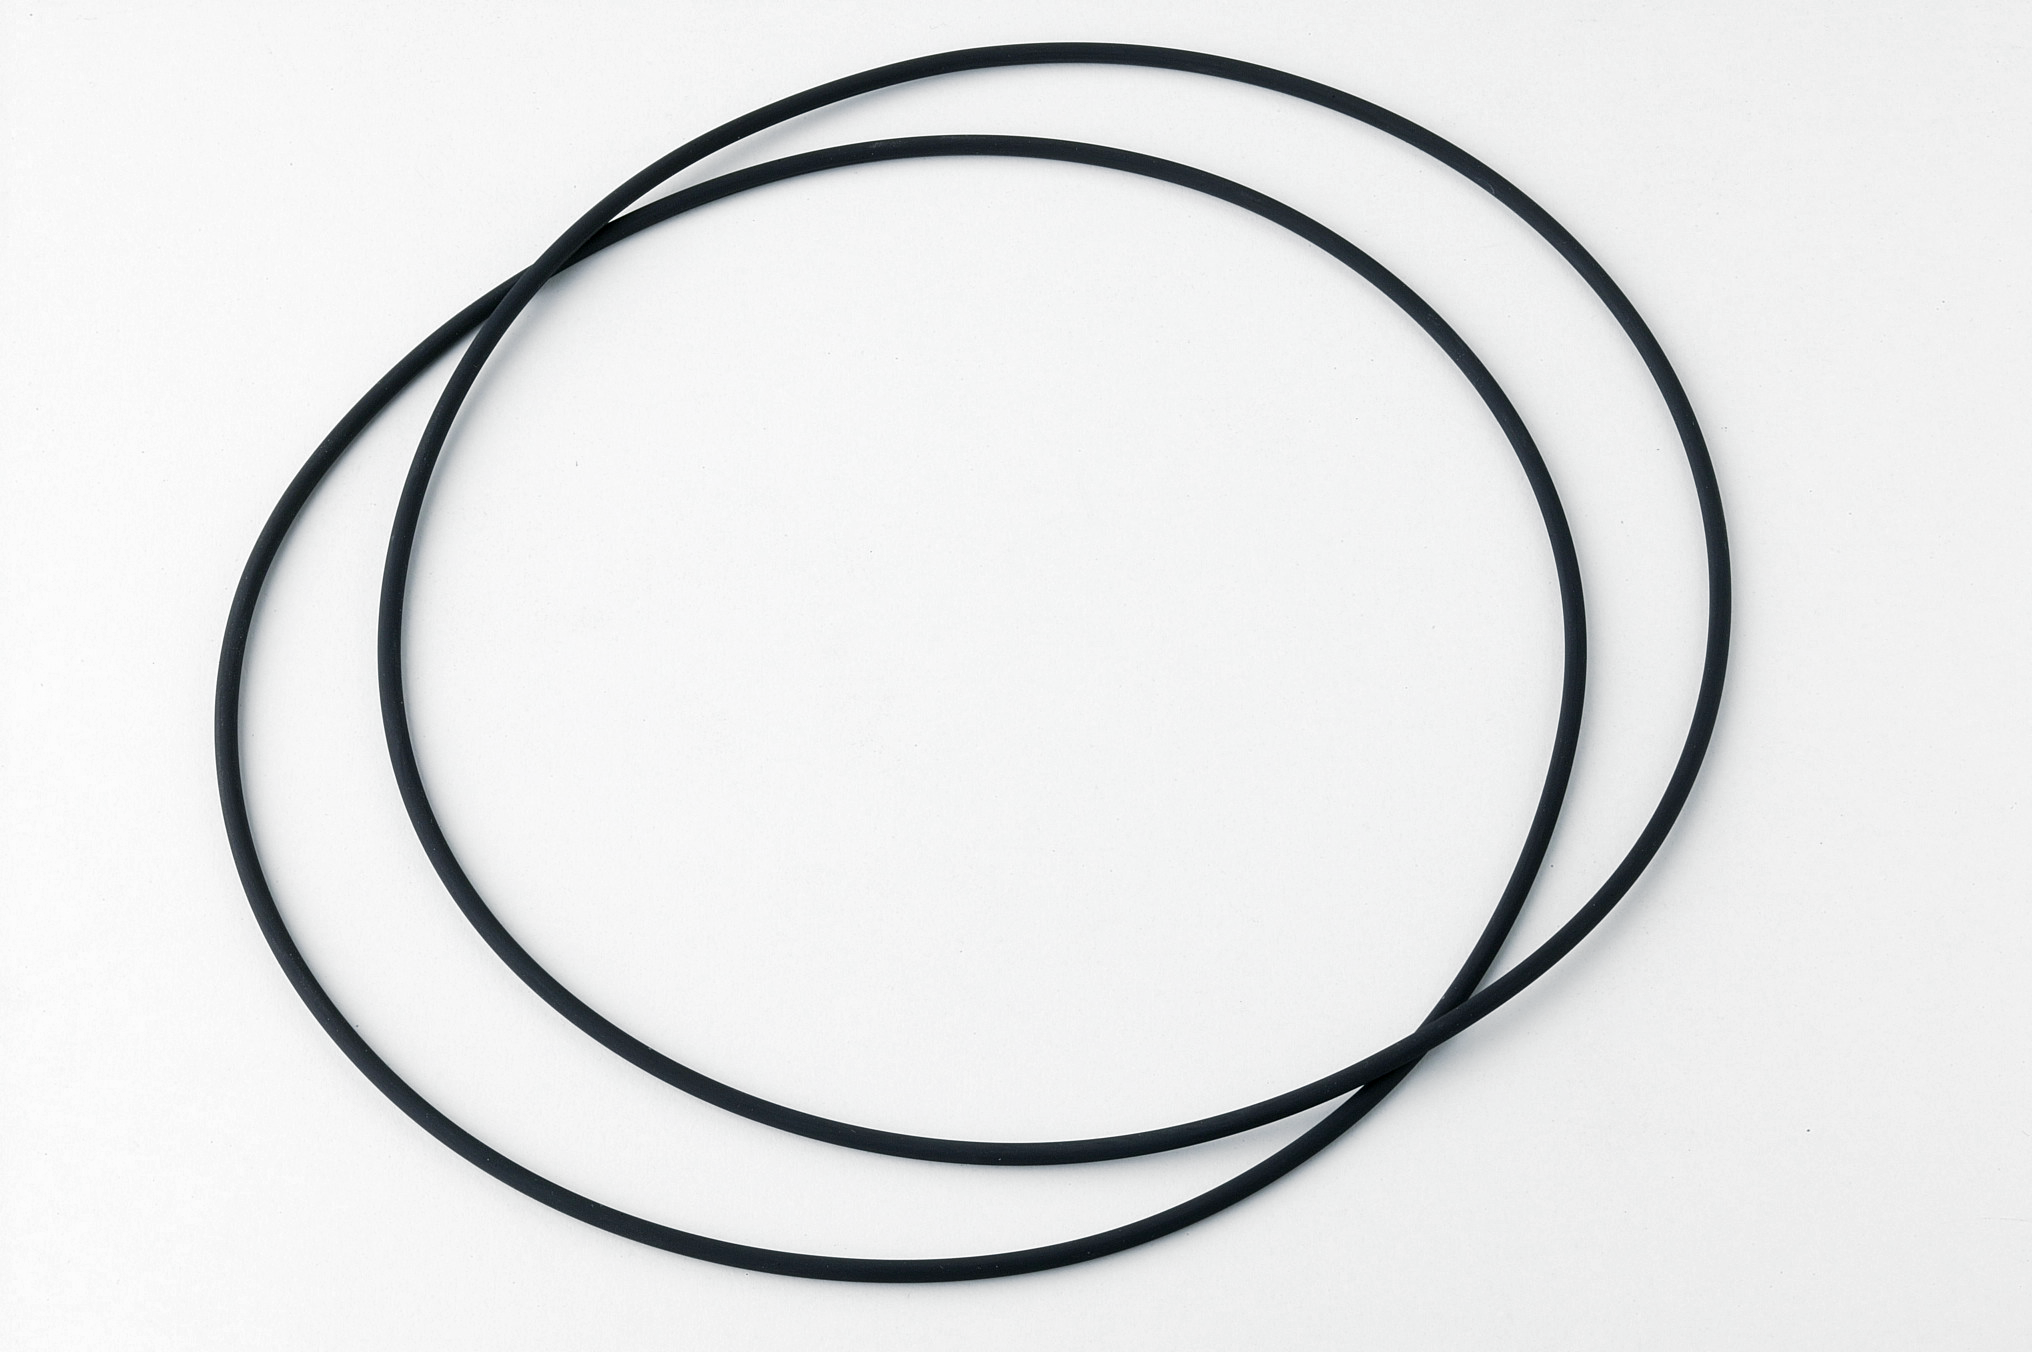 Flange O-ring 202.79 x 3.53 mm | Cytiva